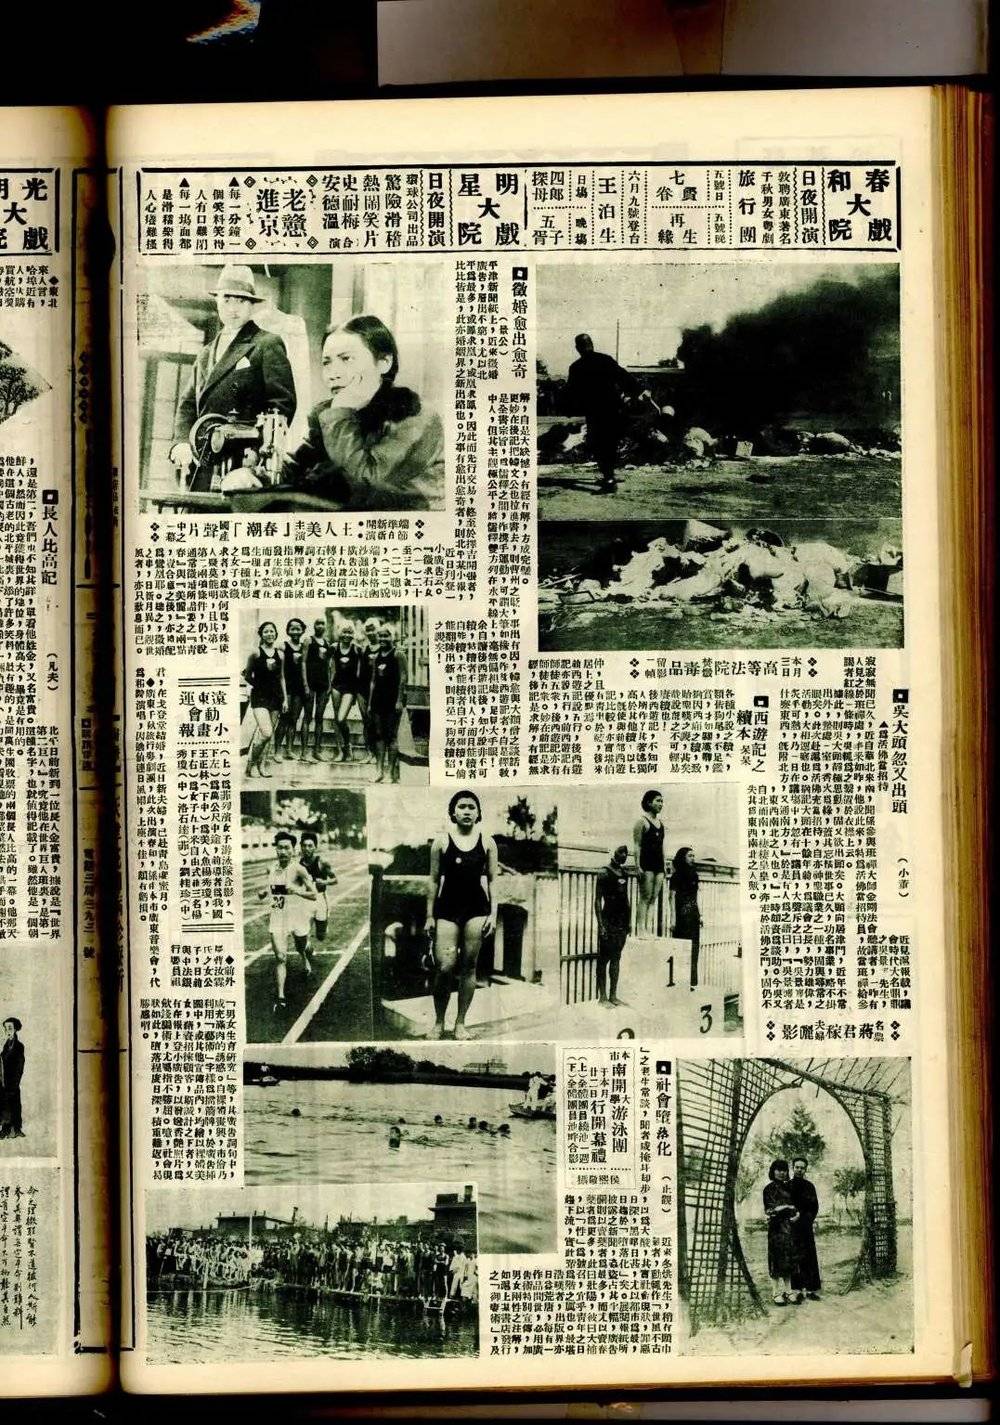 ■ 胡蝶与潘有声在上海的婚礼（左）、 1934年6月5日《天津商报画刊》中有炸毁民房的照片（右）<br>